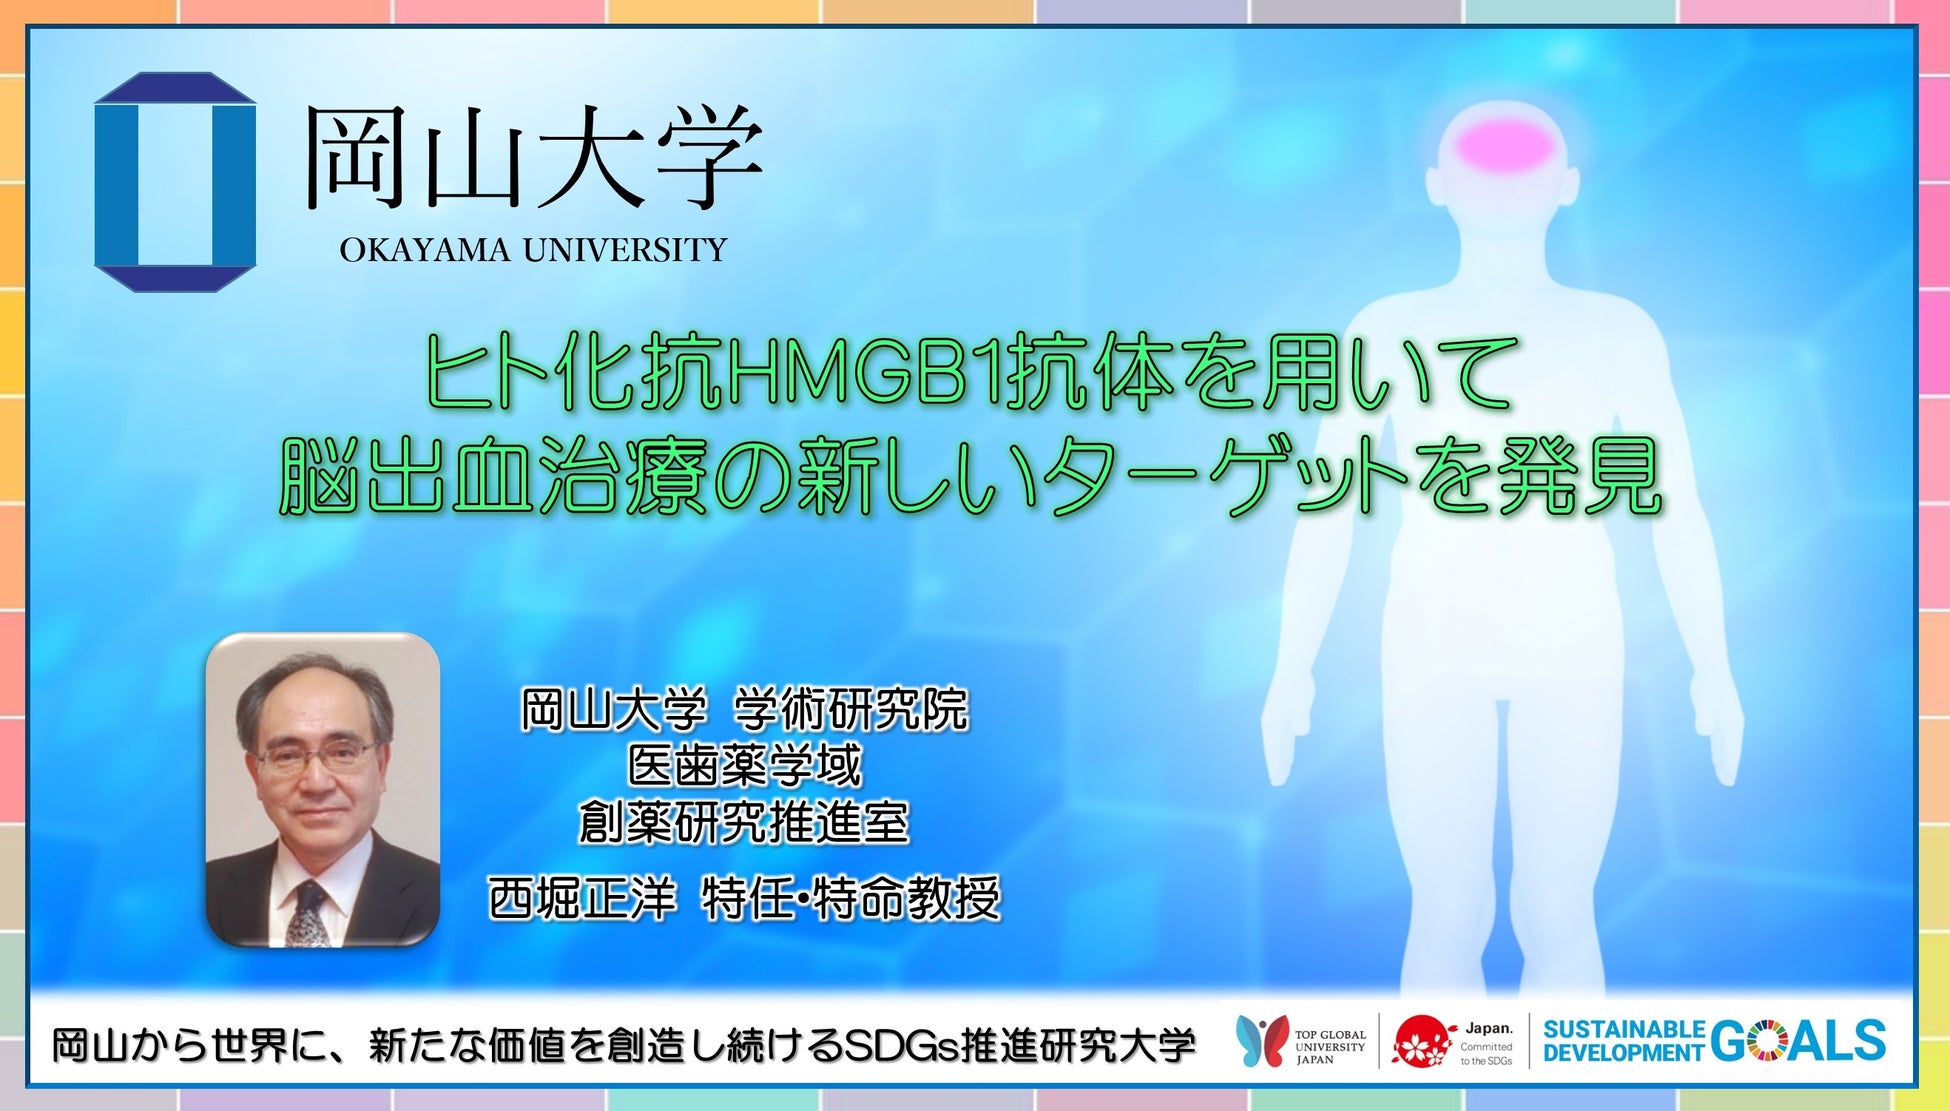 【岡山大学】ヒト化抗HMGB1抗体を用いて脳出血治療の新しいターゲットを発見